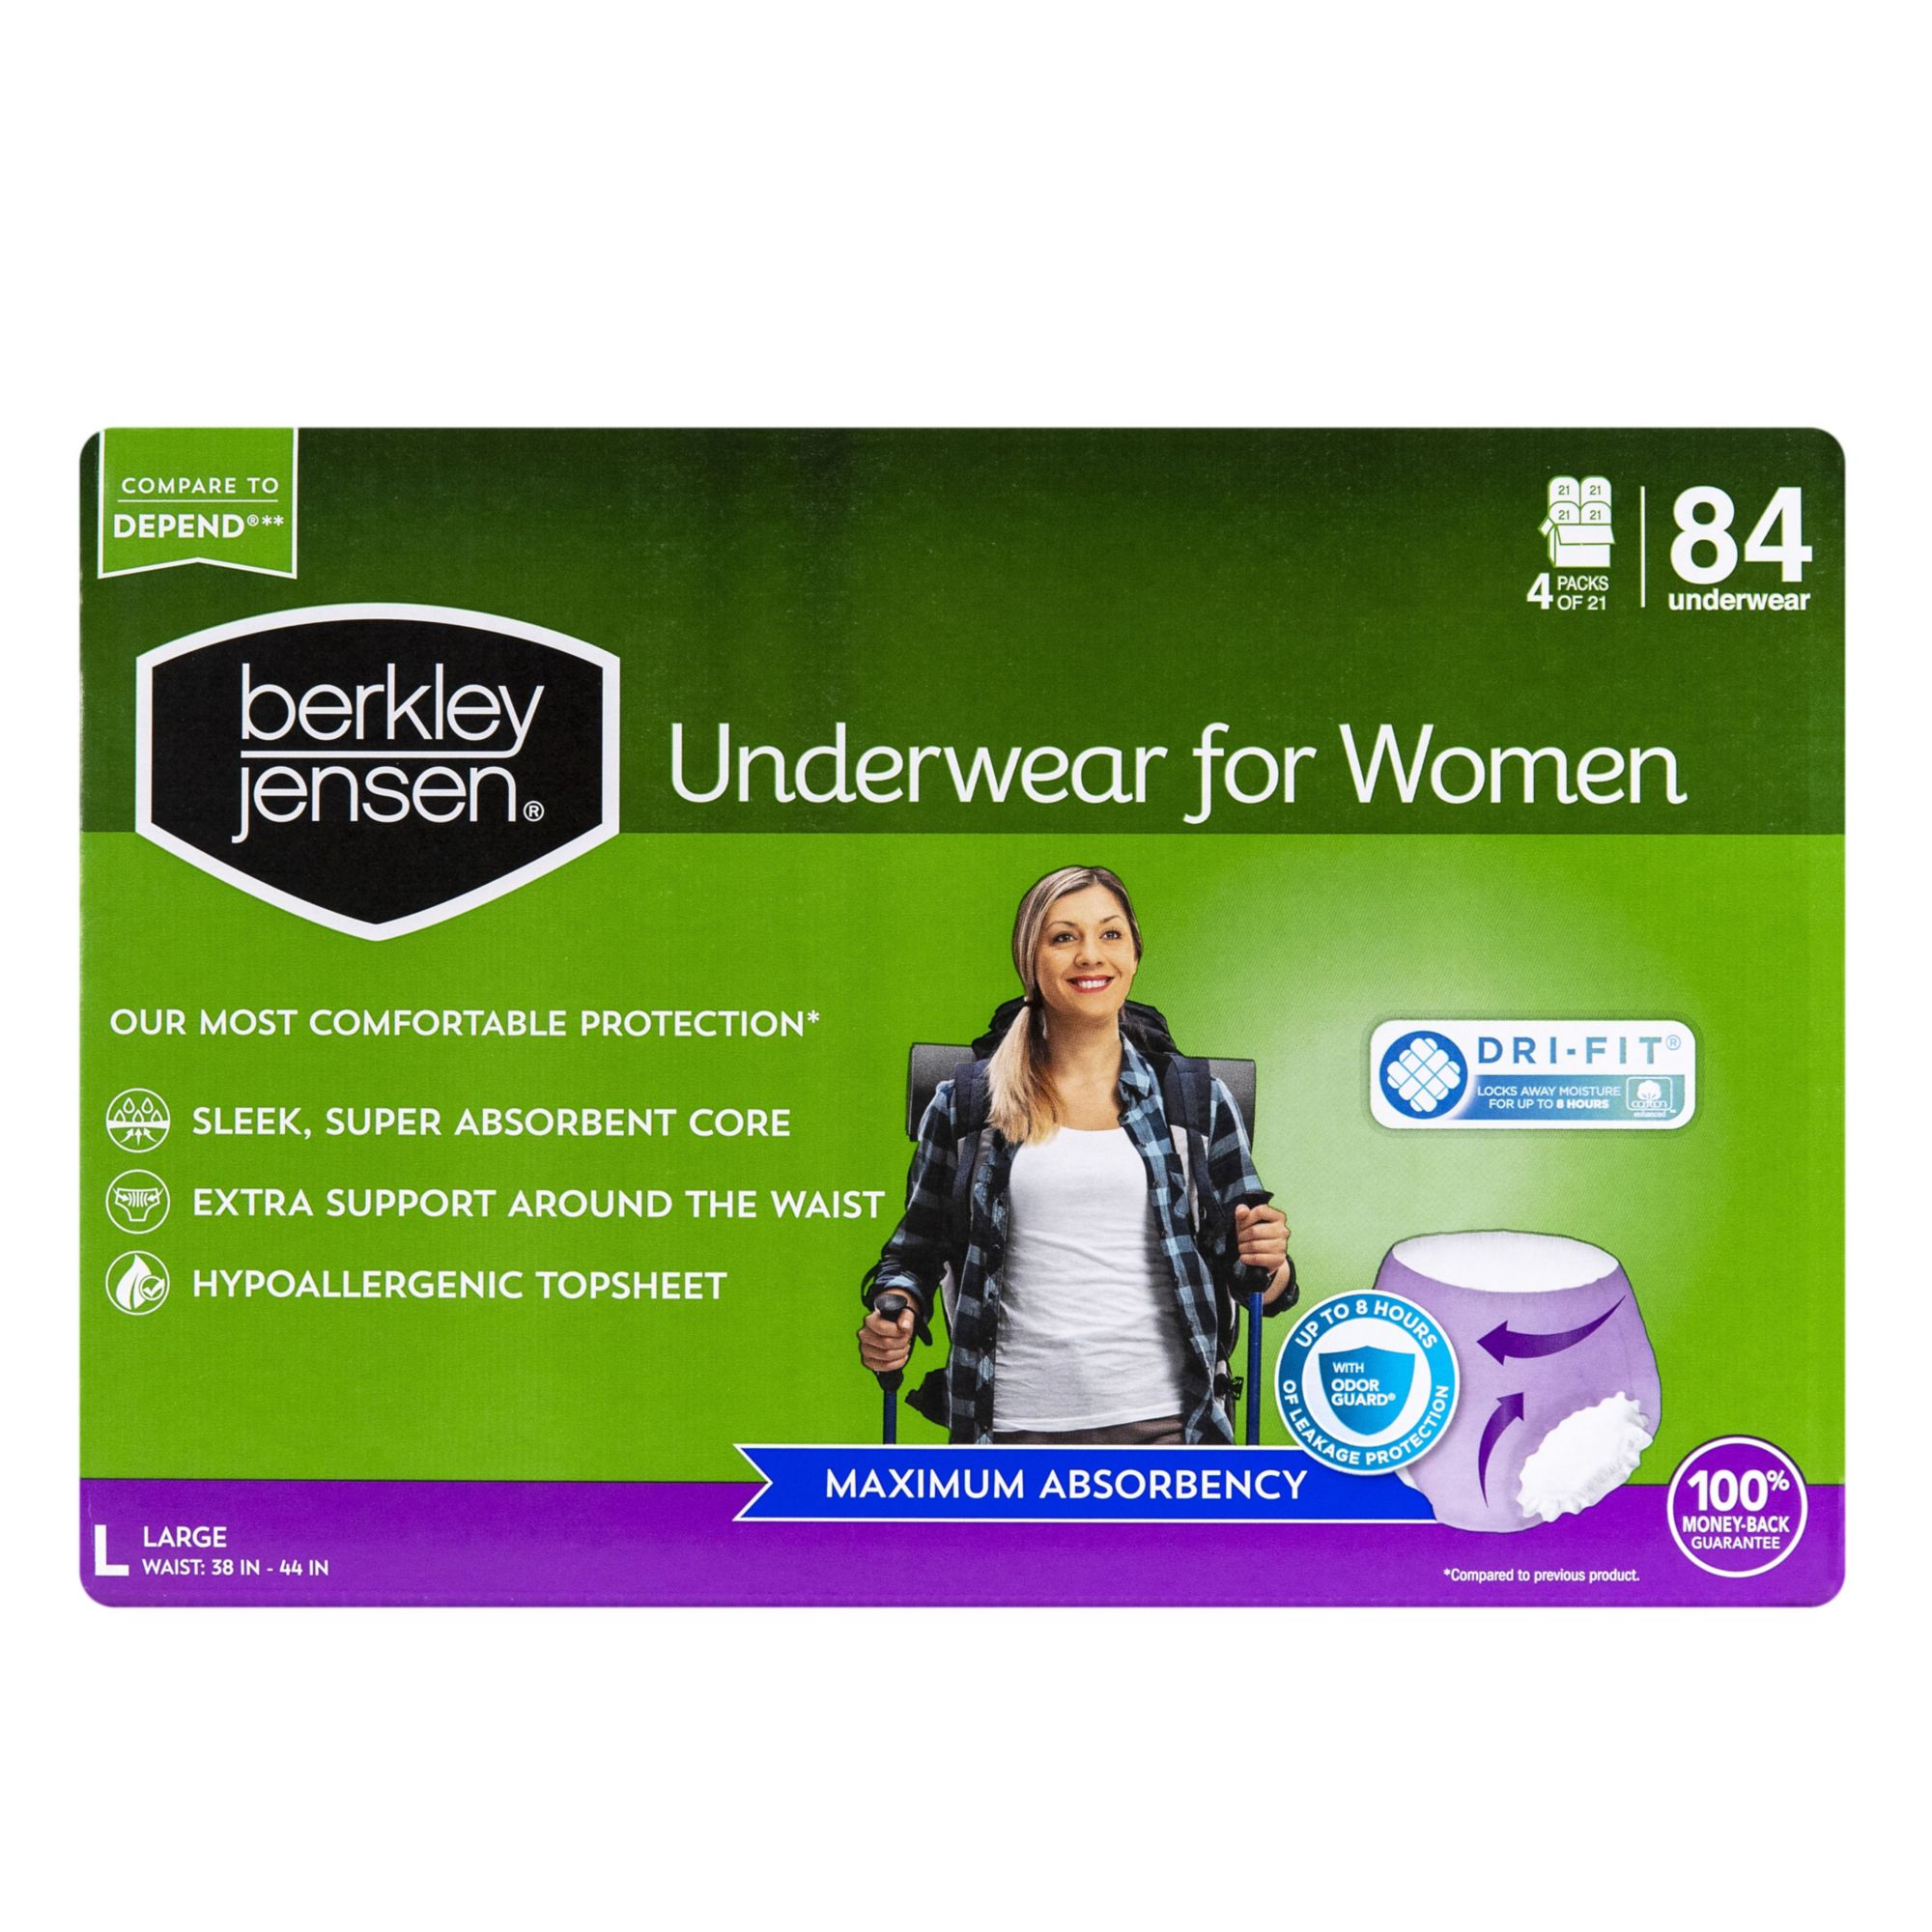 Berkley Jensen Incontinence and Post Partum Underwear for Women